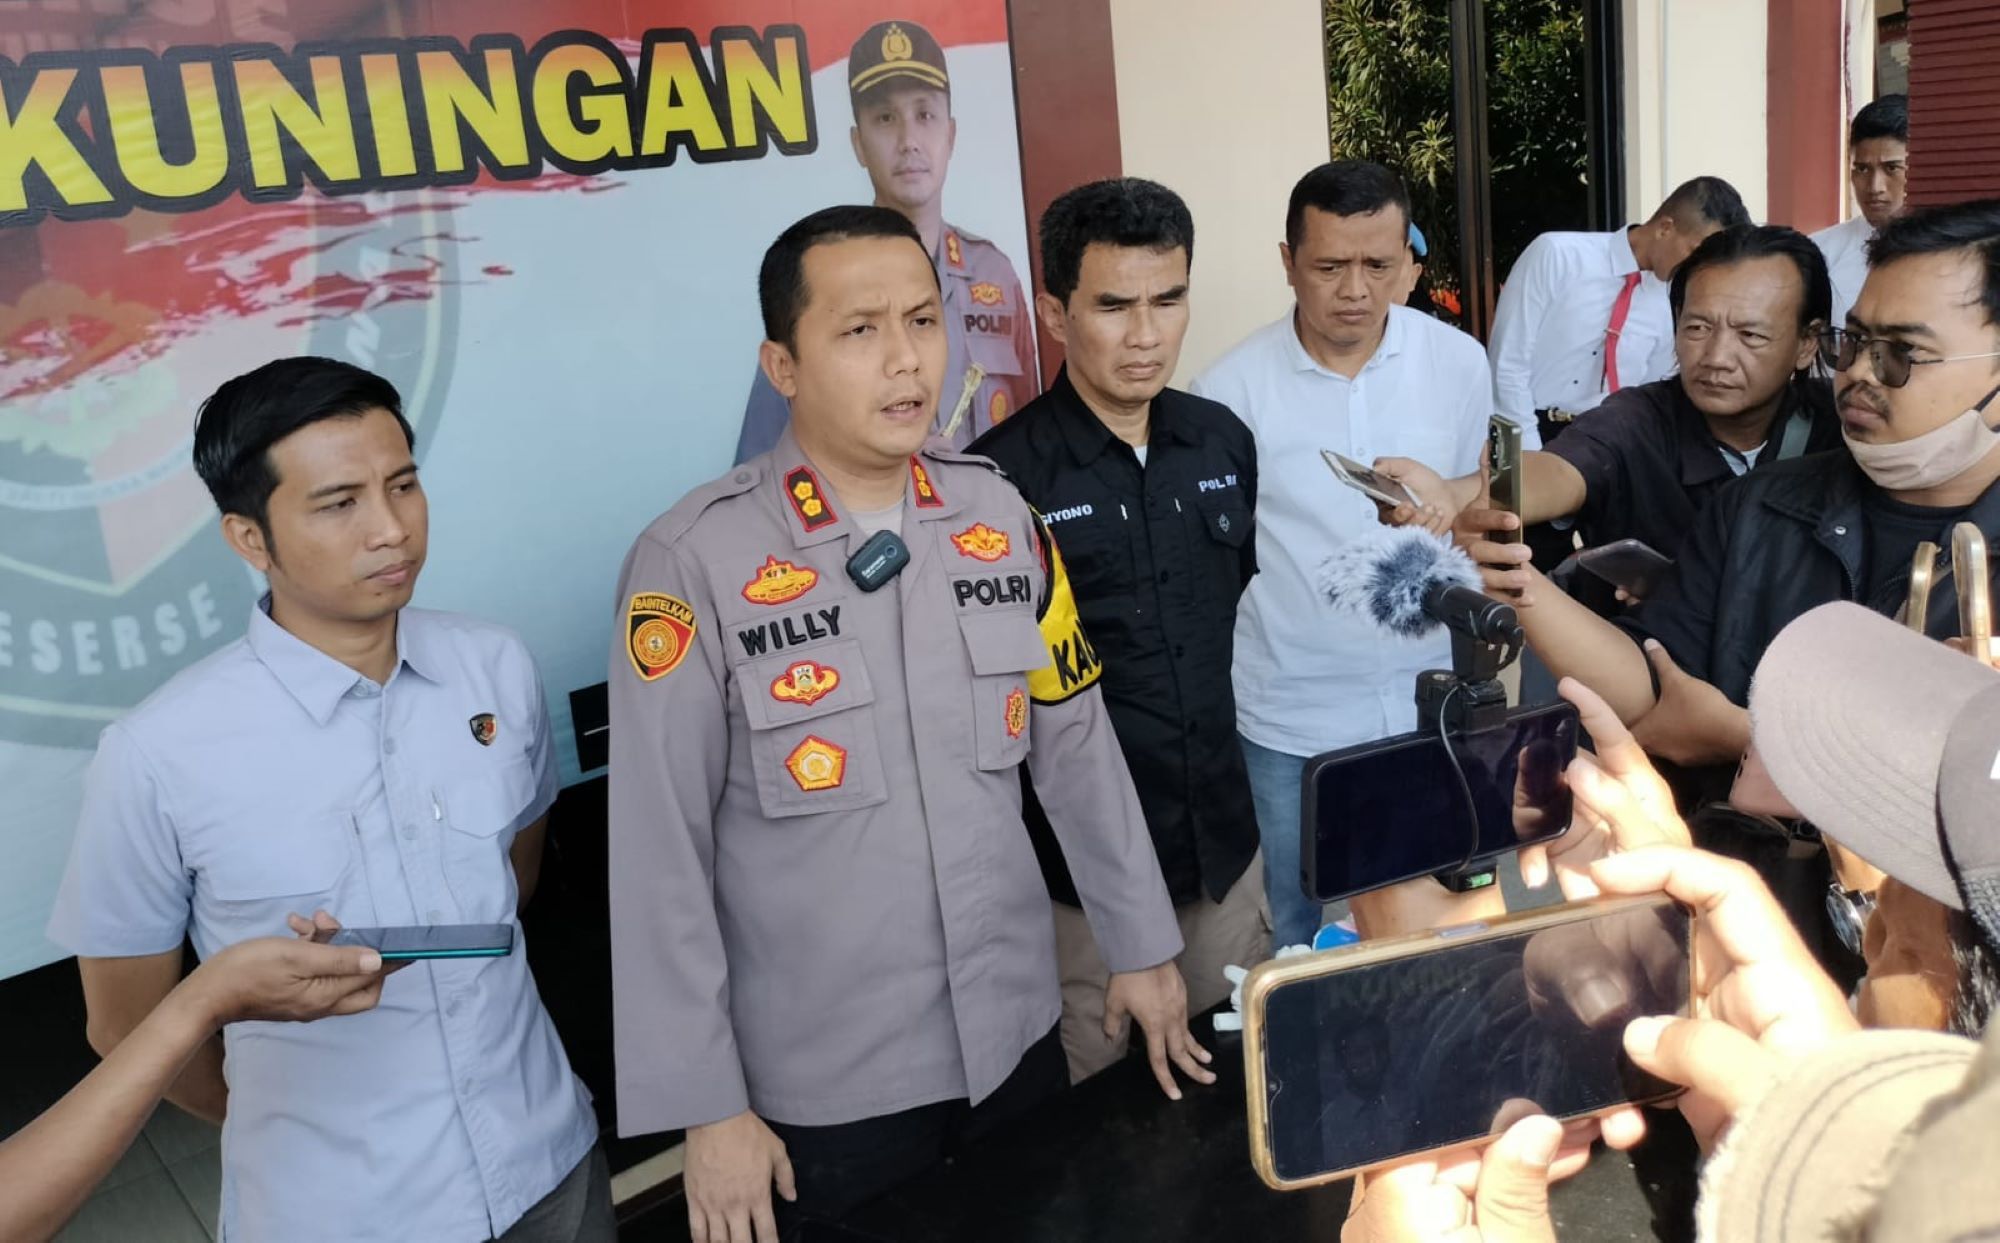 Polres Kuningan menggelar konferensi pers terkait pengungkapan kasus menghilangkan nyawa orang yang terjadi di salah satu hotel di Kabupaten Kuningan.